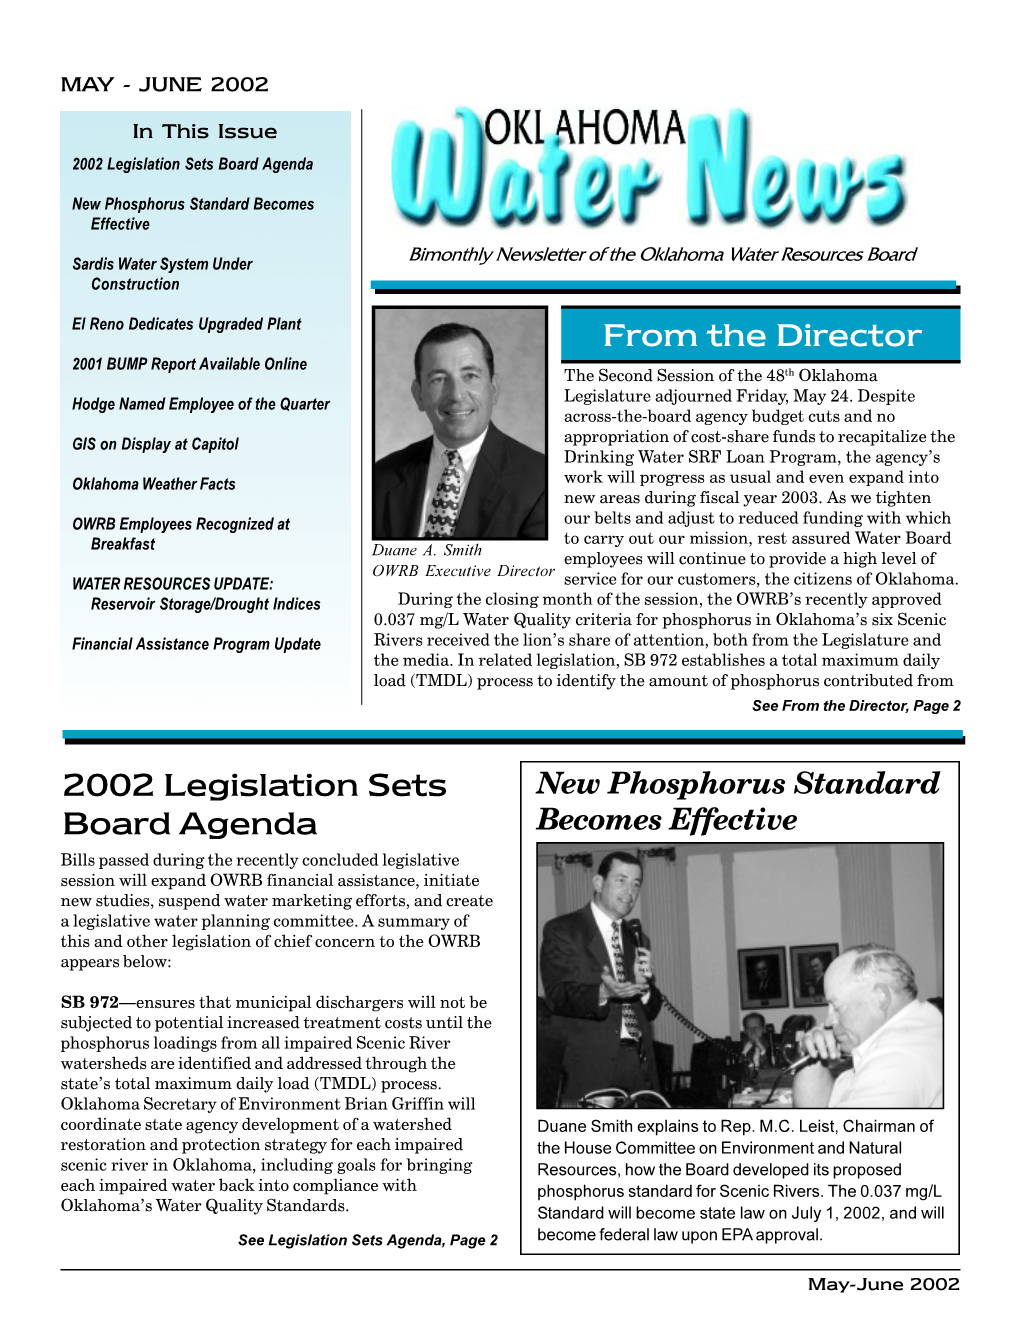 Oklahoma Water News May-June 2002